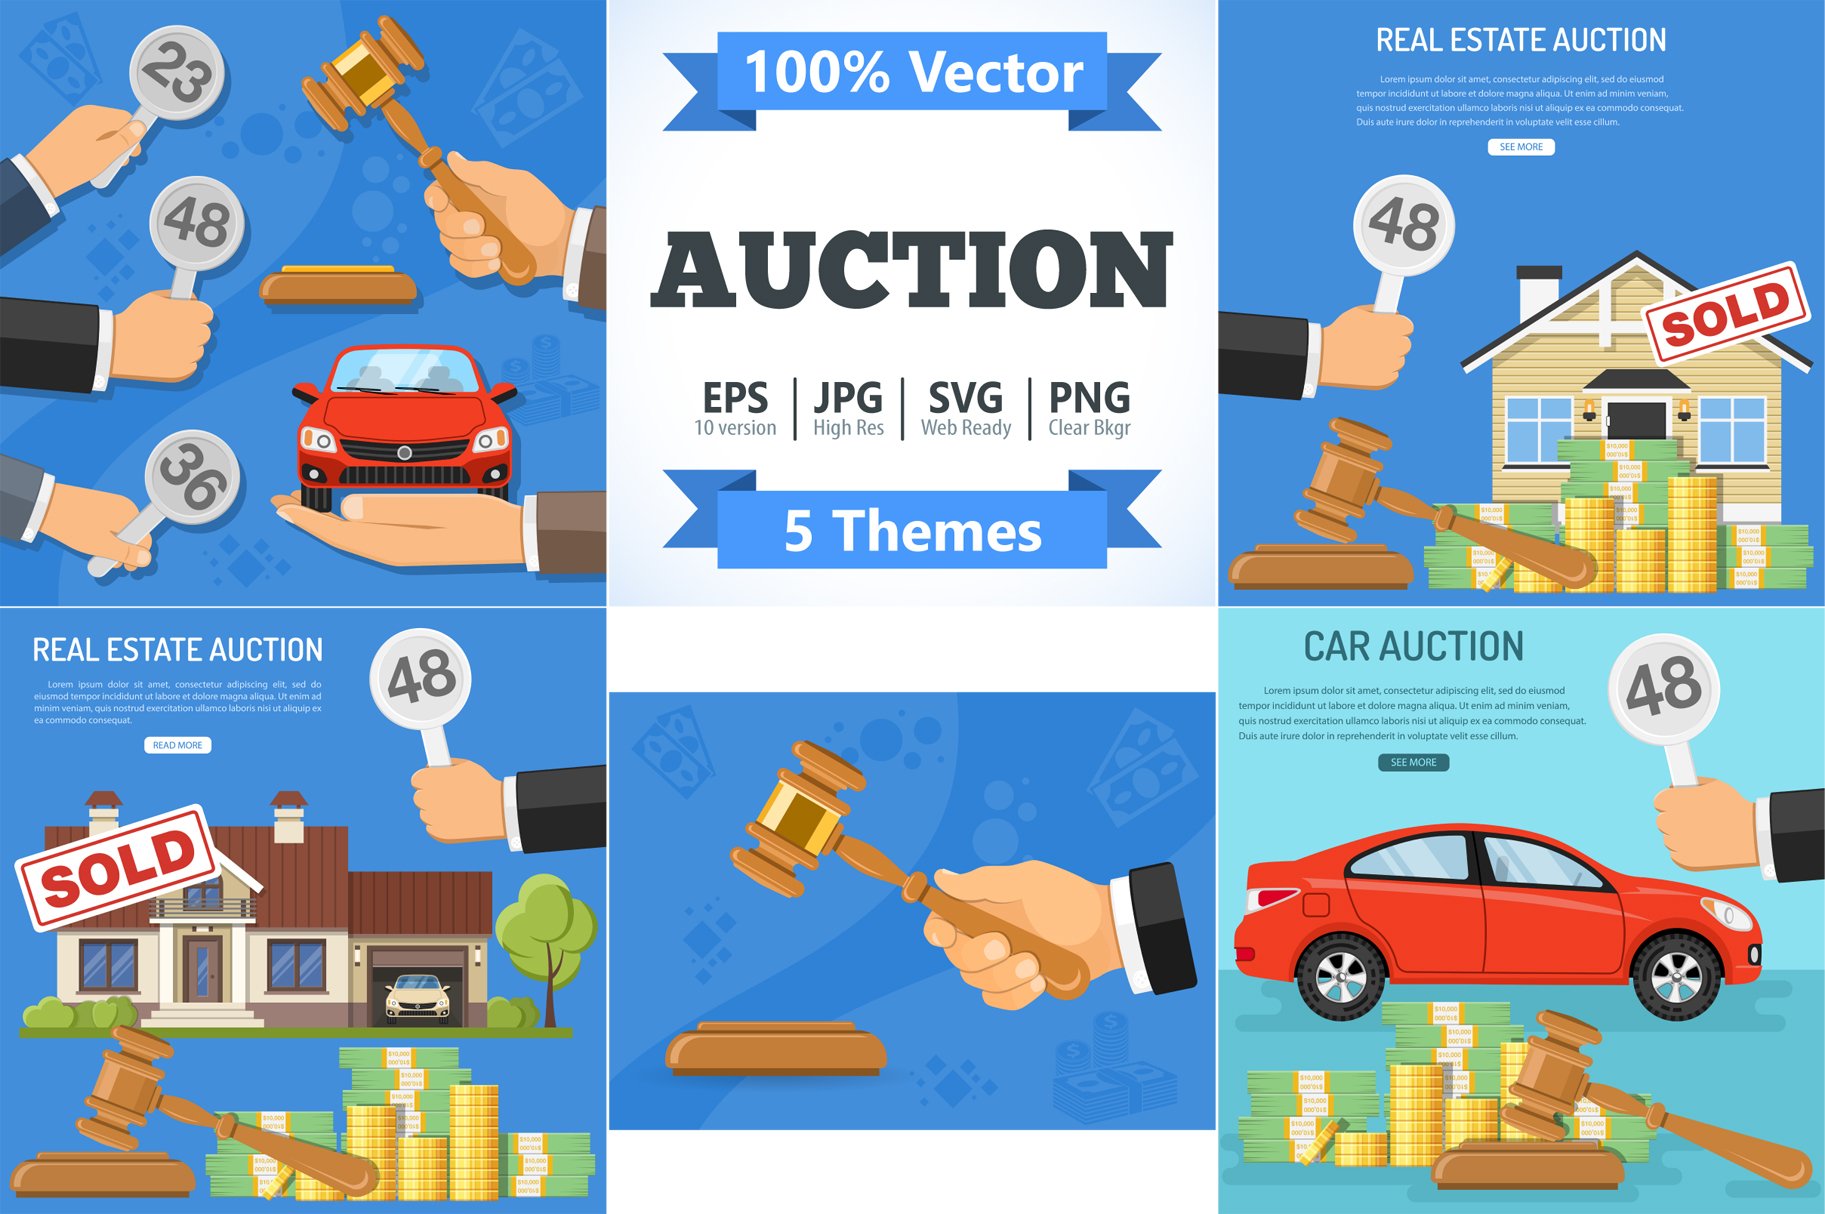 Buy, Sale, Rent, Auction Concepts cover image.